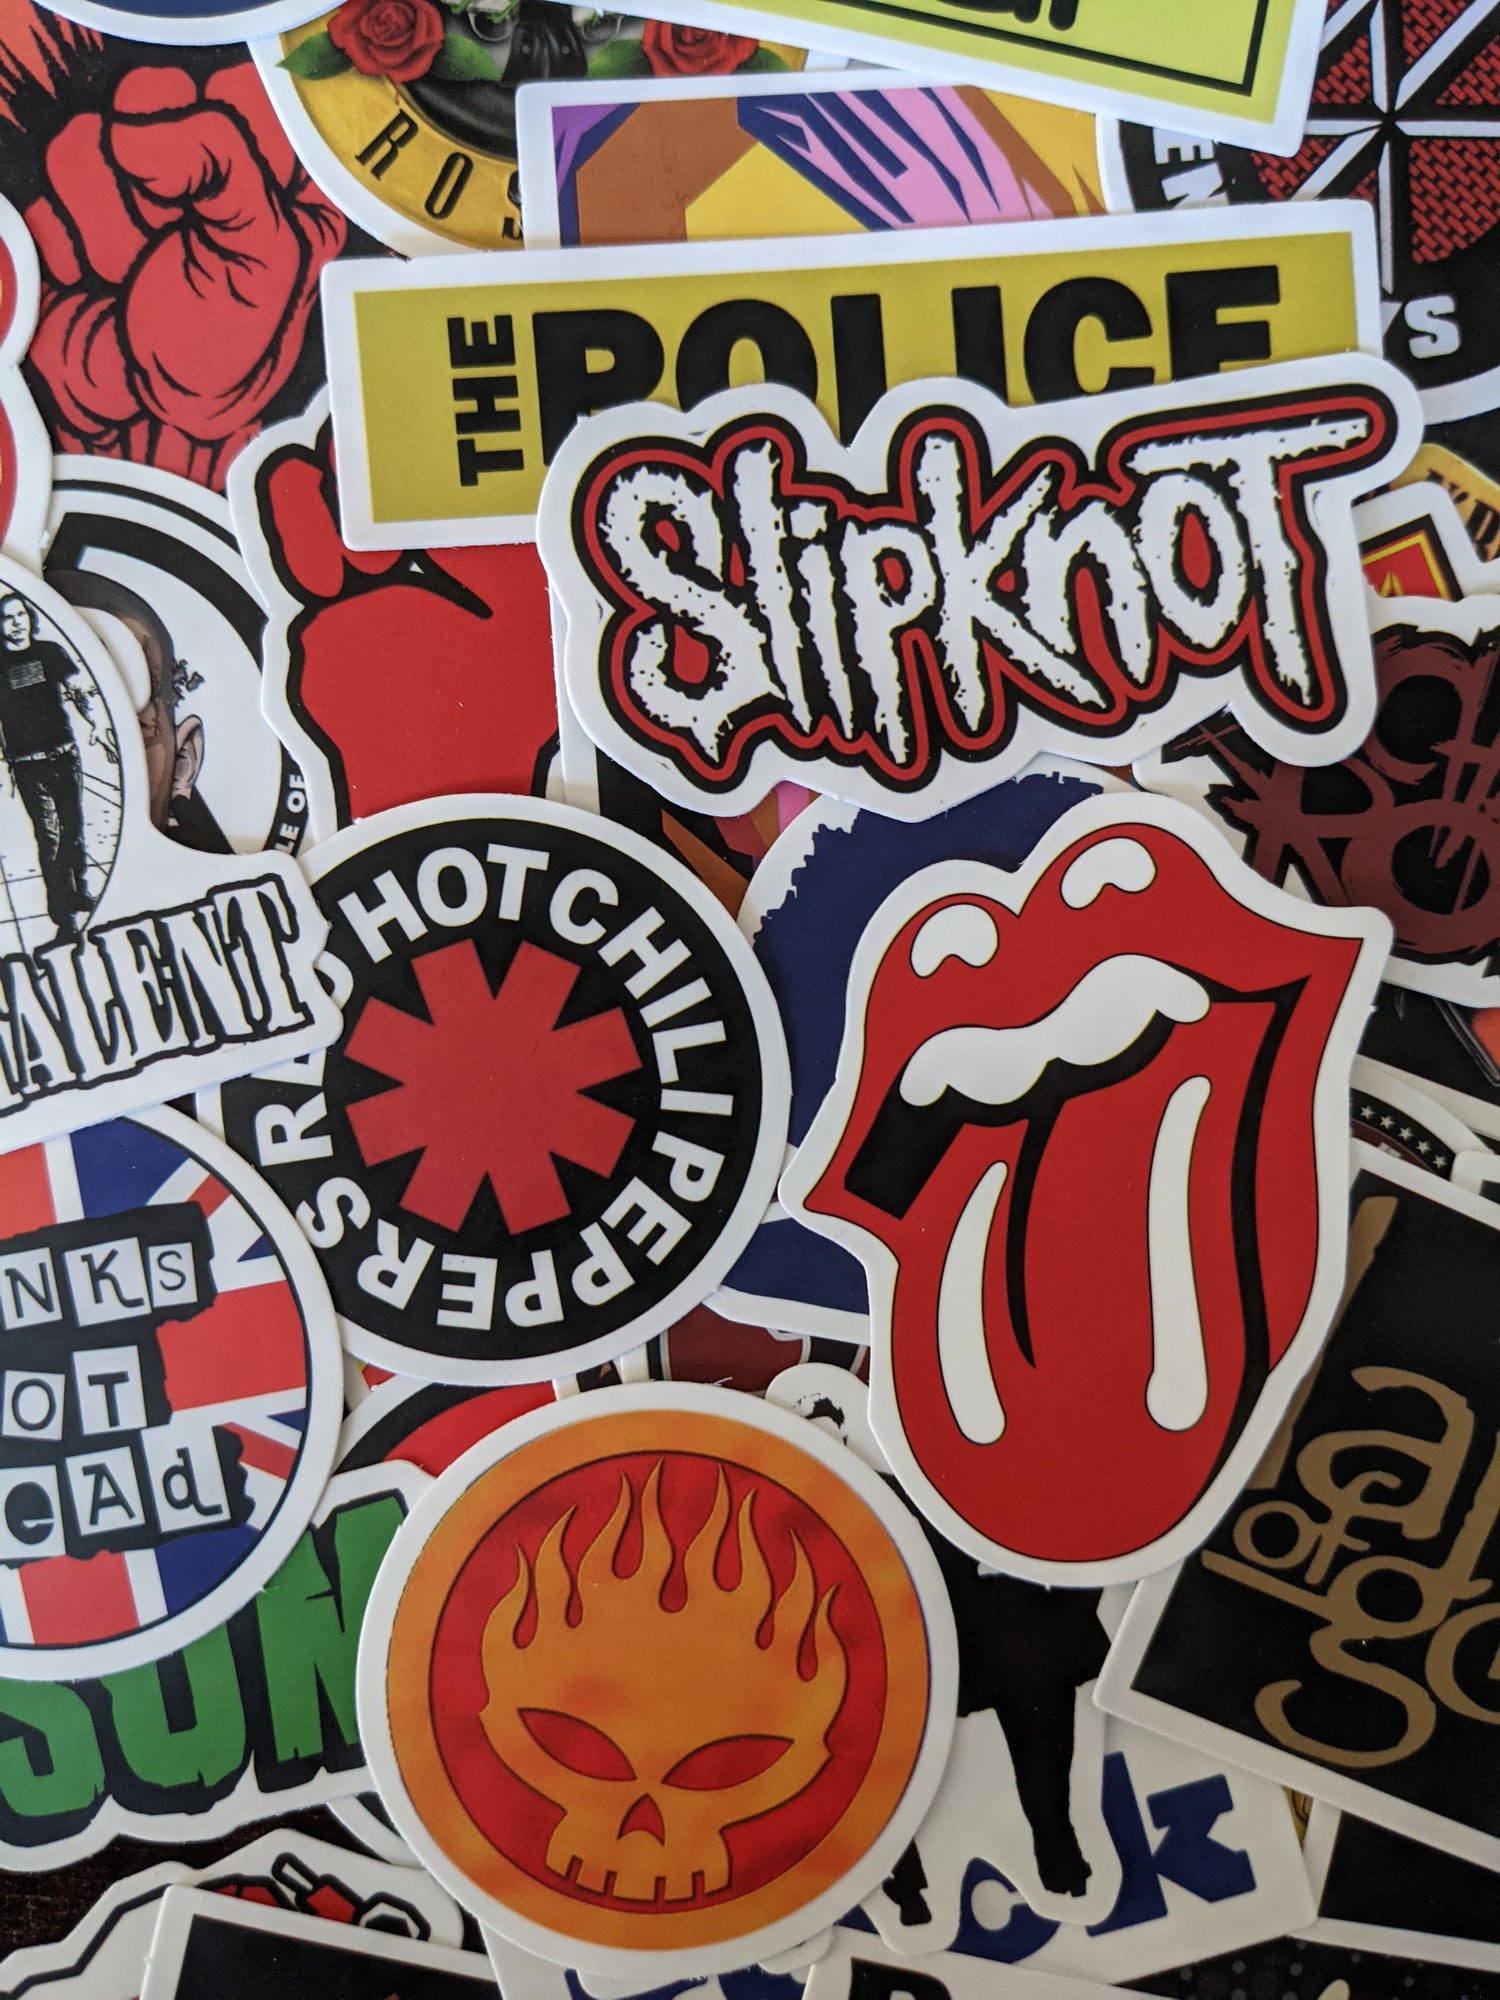 500 Random Stickers – Stickerload